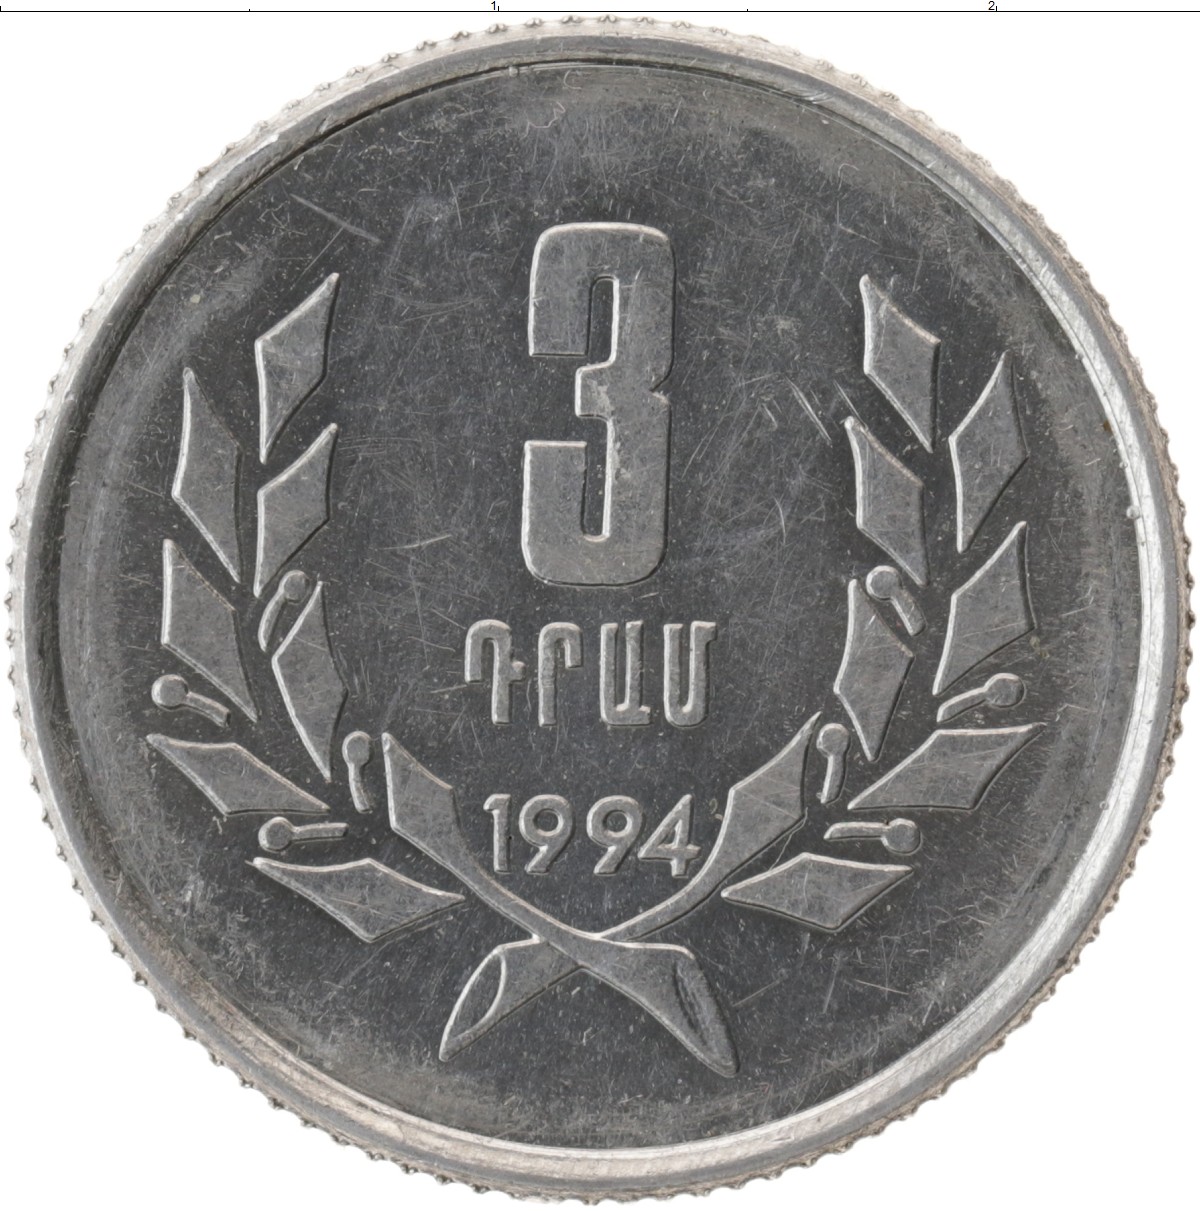 10 от 80 рублей. 3 Драма 1994 Армения. Монета 3 драма 1994 Армения. Монеты Армении 1994. Армянские монеты 1994 года.